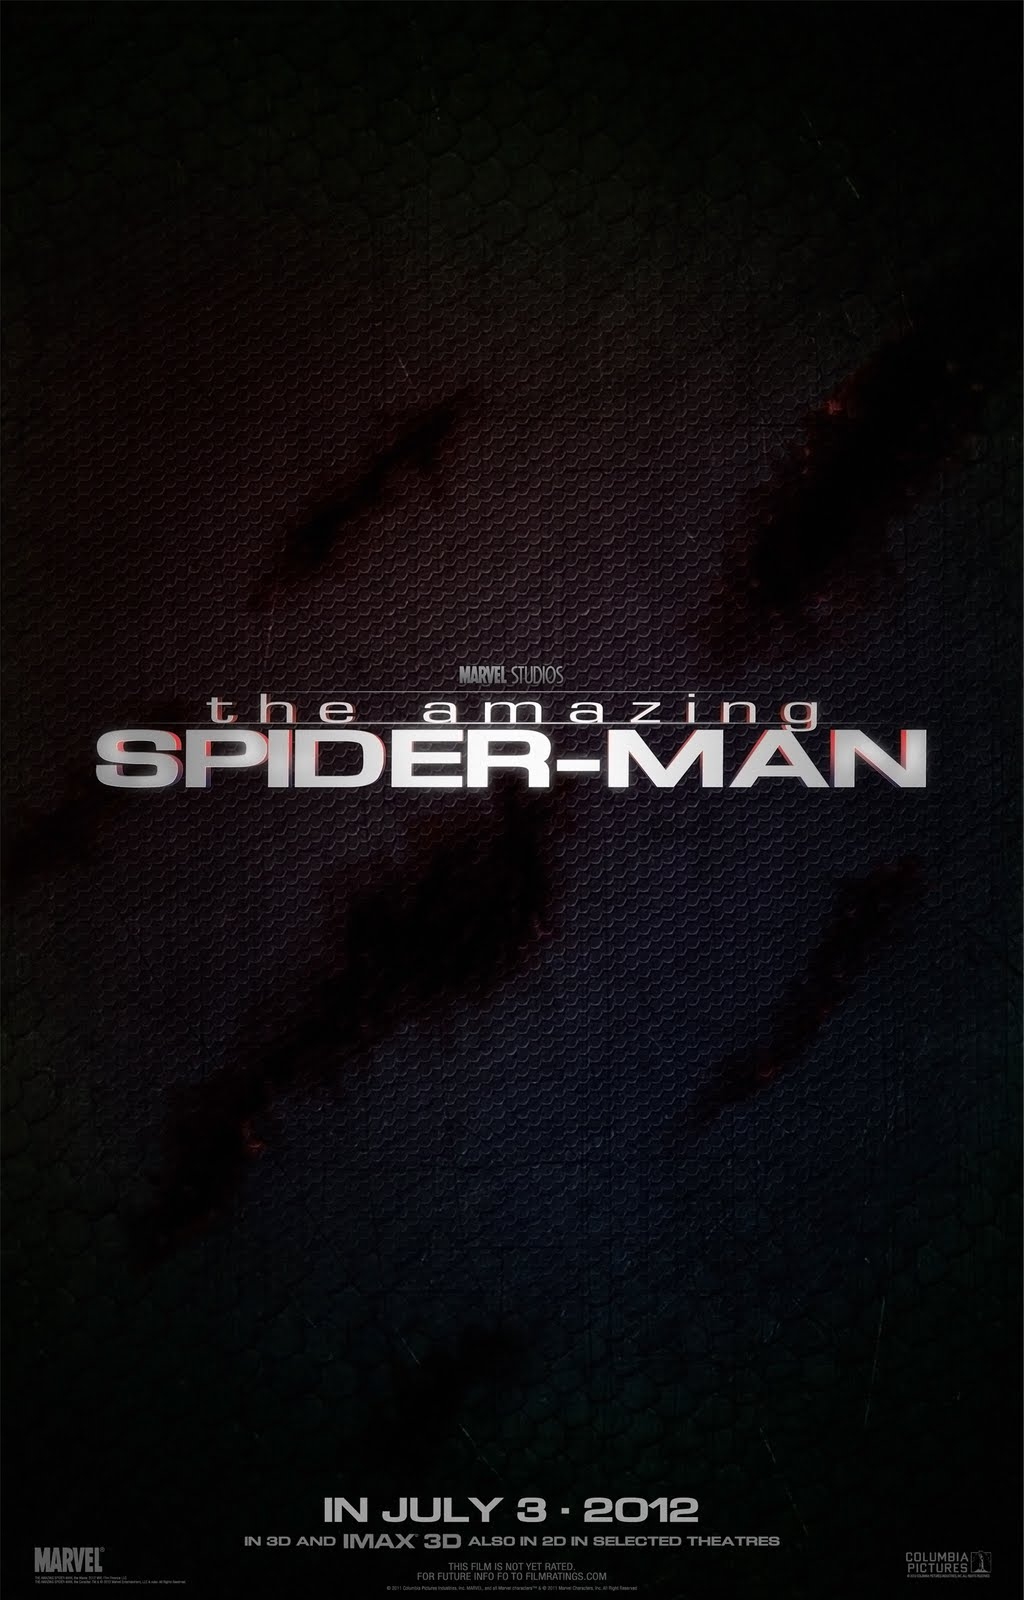 http://2.bp.blogspot.com/-2079qwK_JNc/Tdj1z8evRpI/AAAAAAAAIts/PGtpr_kMlSM/s1600/the_amazing_spider-man_teaser_poster2.jpg